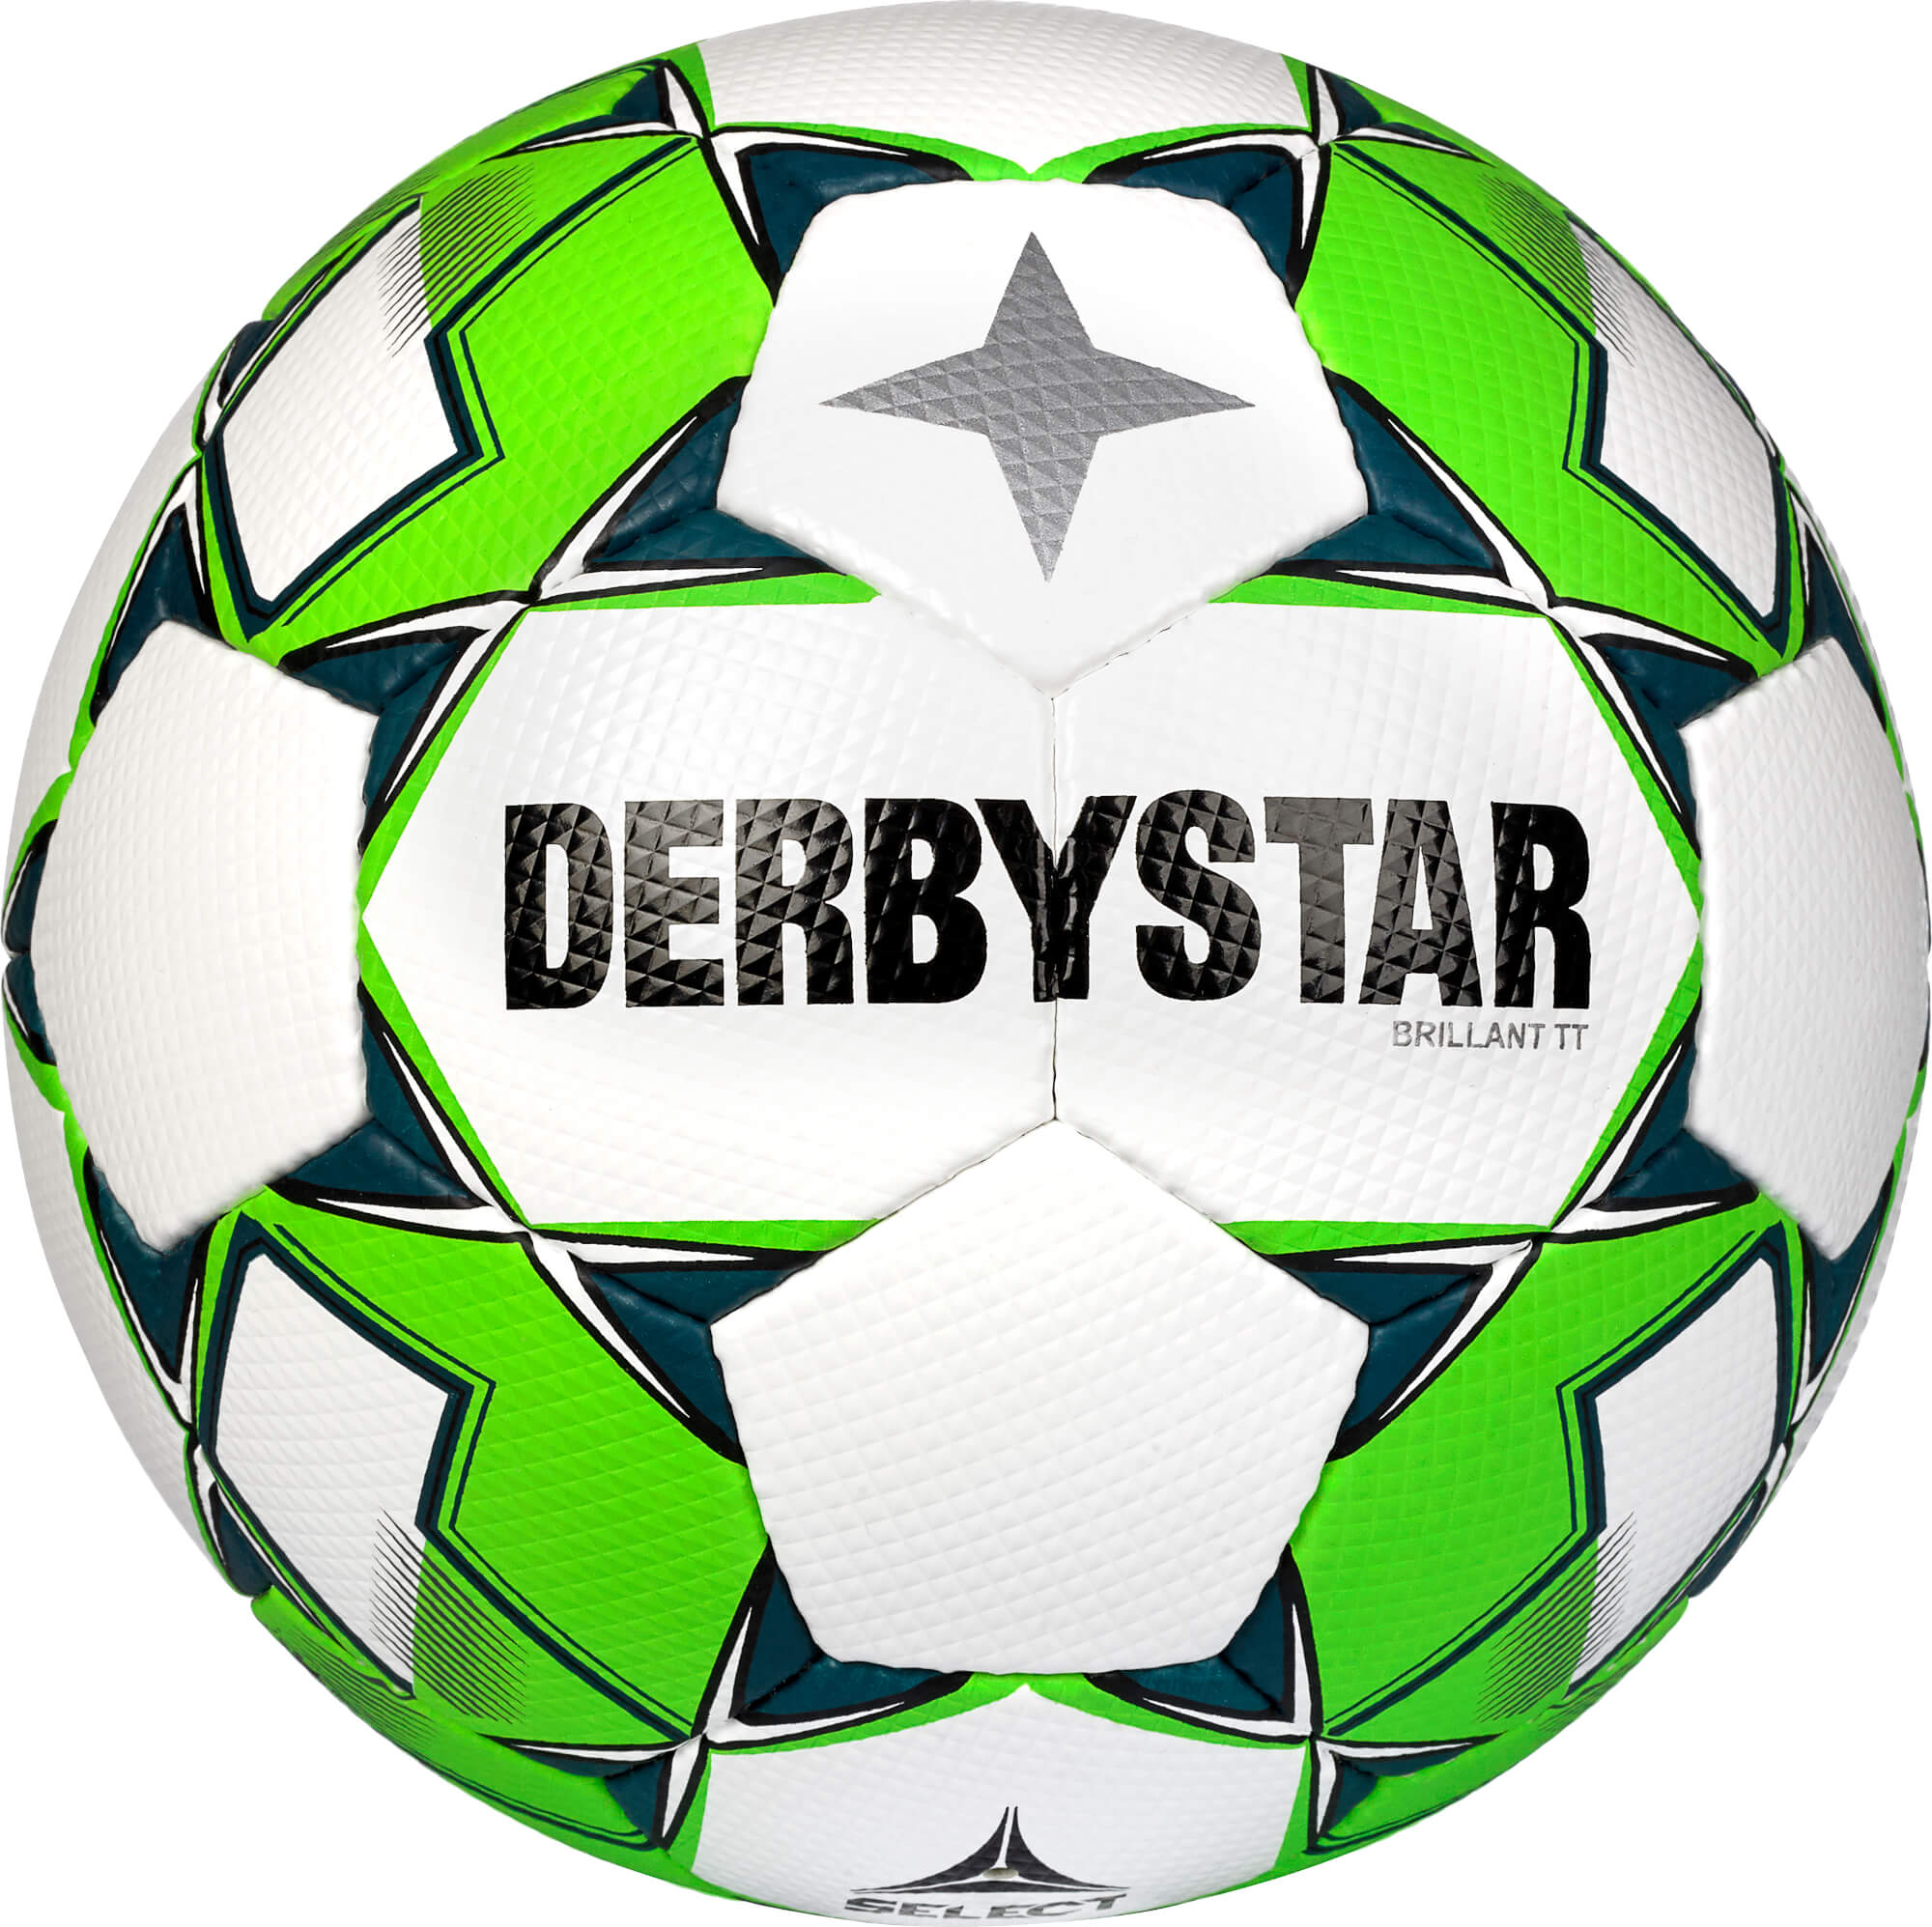 Derbystar Traningsball BRILLANT TT v22